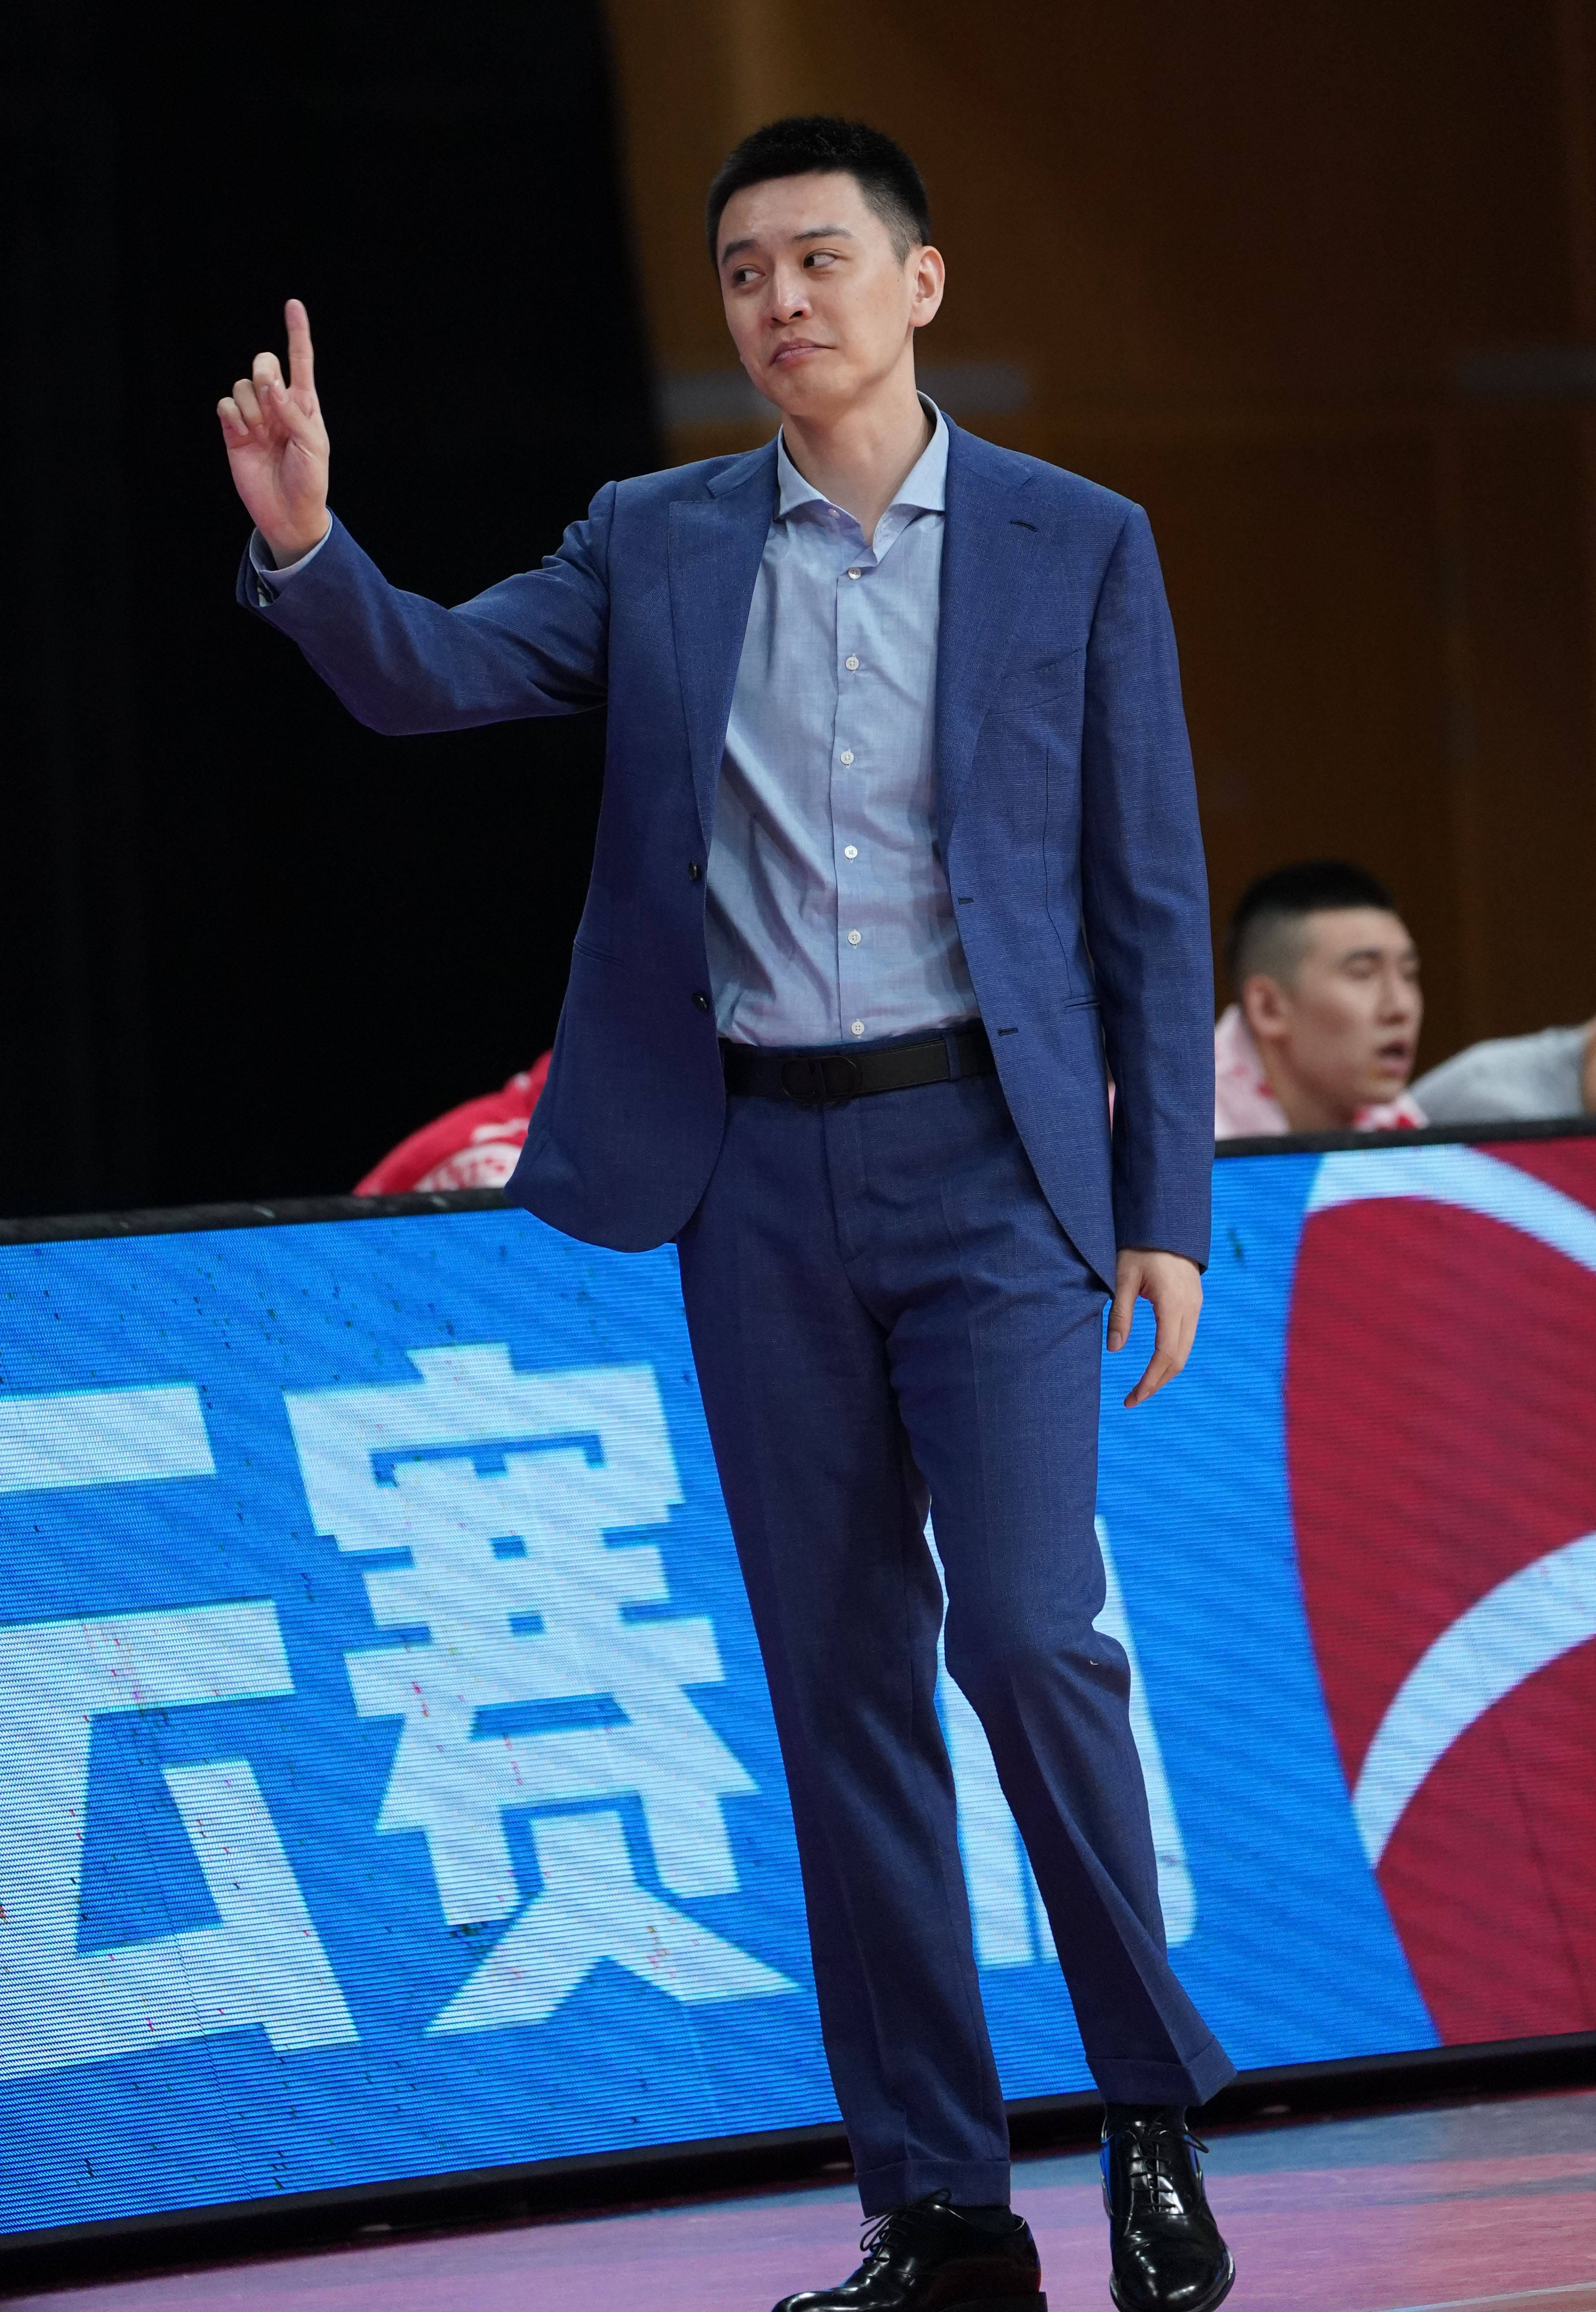 3月26日,辽宁本钢队主教练杨鸣在比赛中质疑裁判判罚.